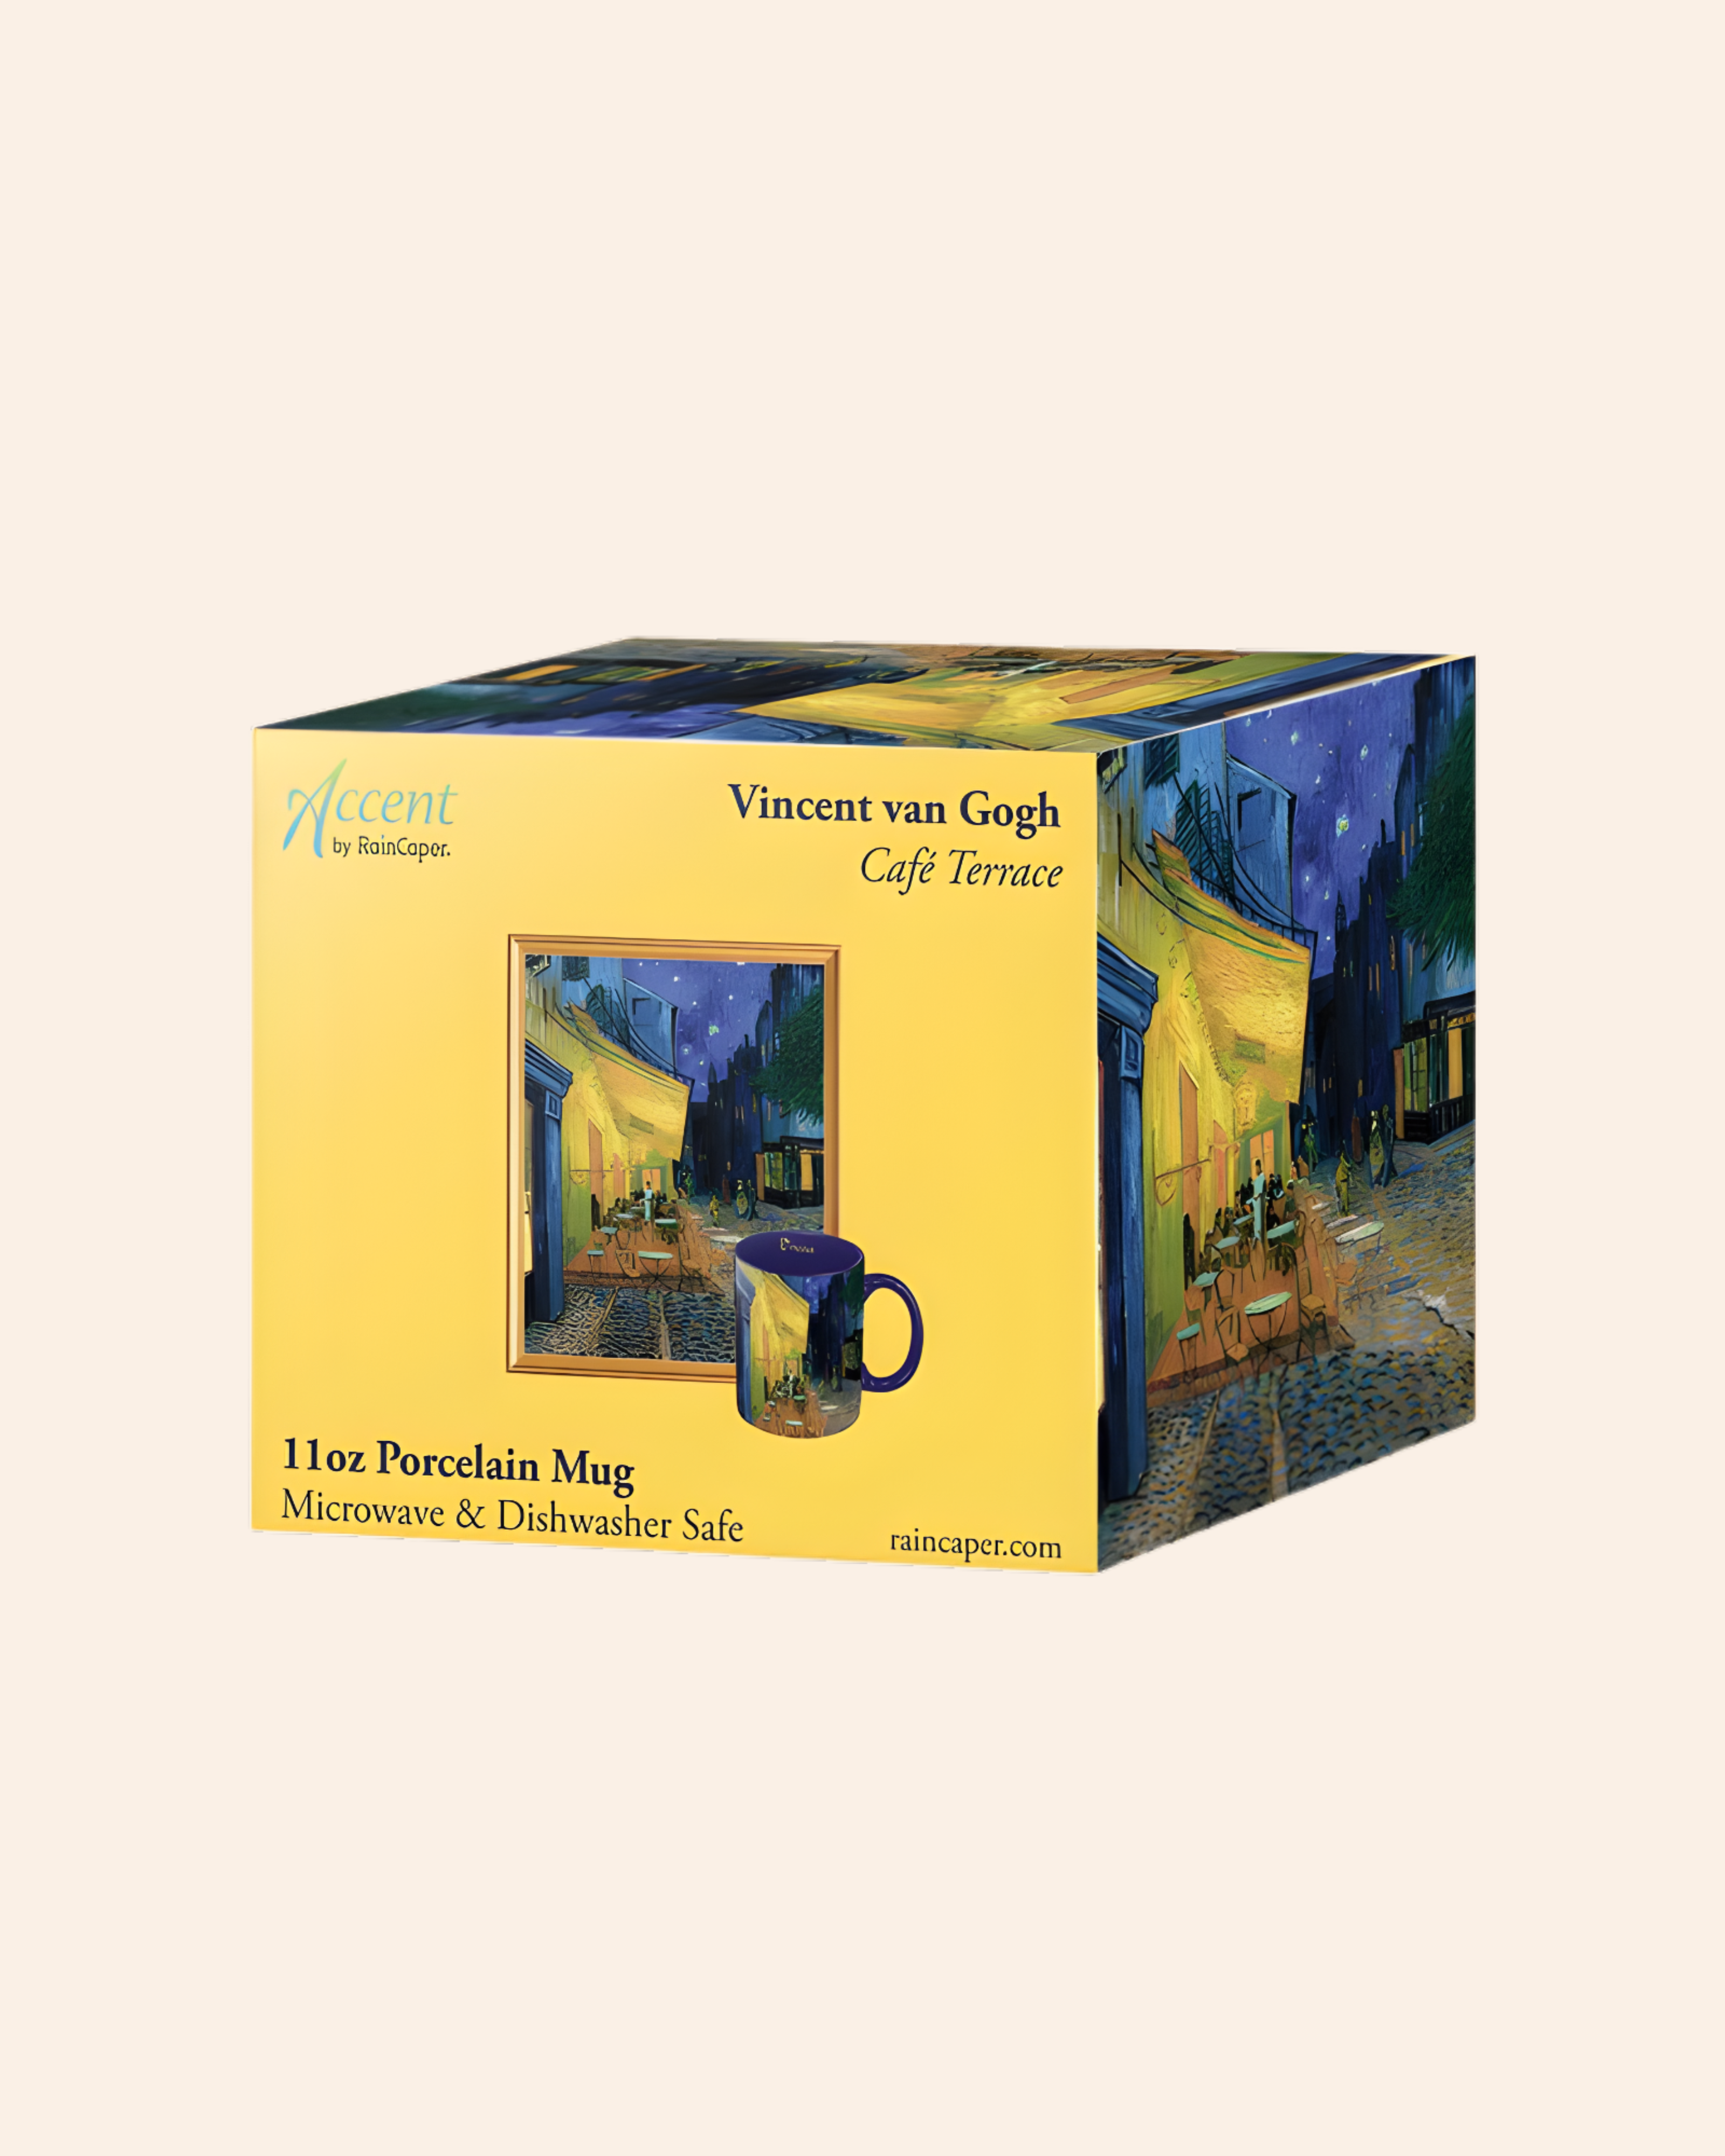 Accent by RainCaper Van Gogh "Irises" Mug for Coffee or Tea casualchicboutiquestore